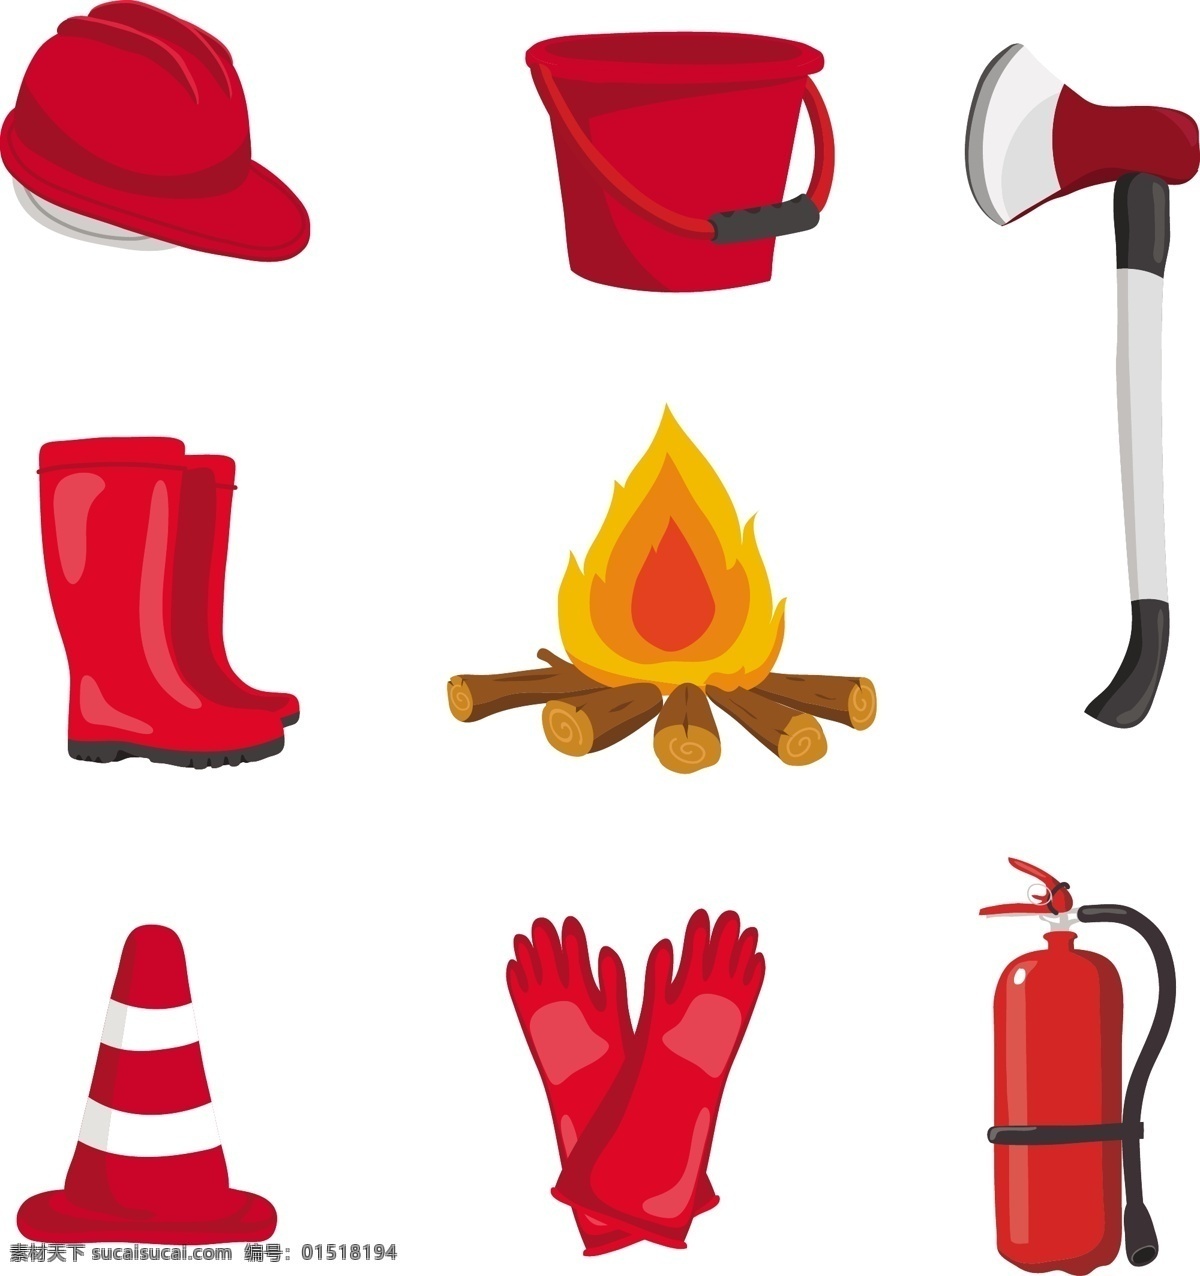 消防设备 设计素材 救火设备 斧头 安全帽 火堆 水桶 鞋子 手套 白色